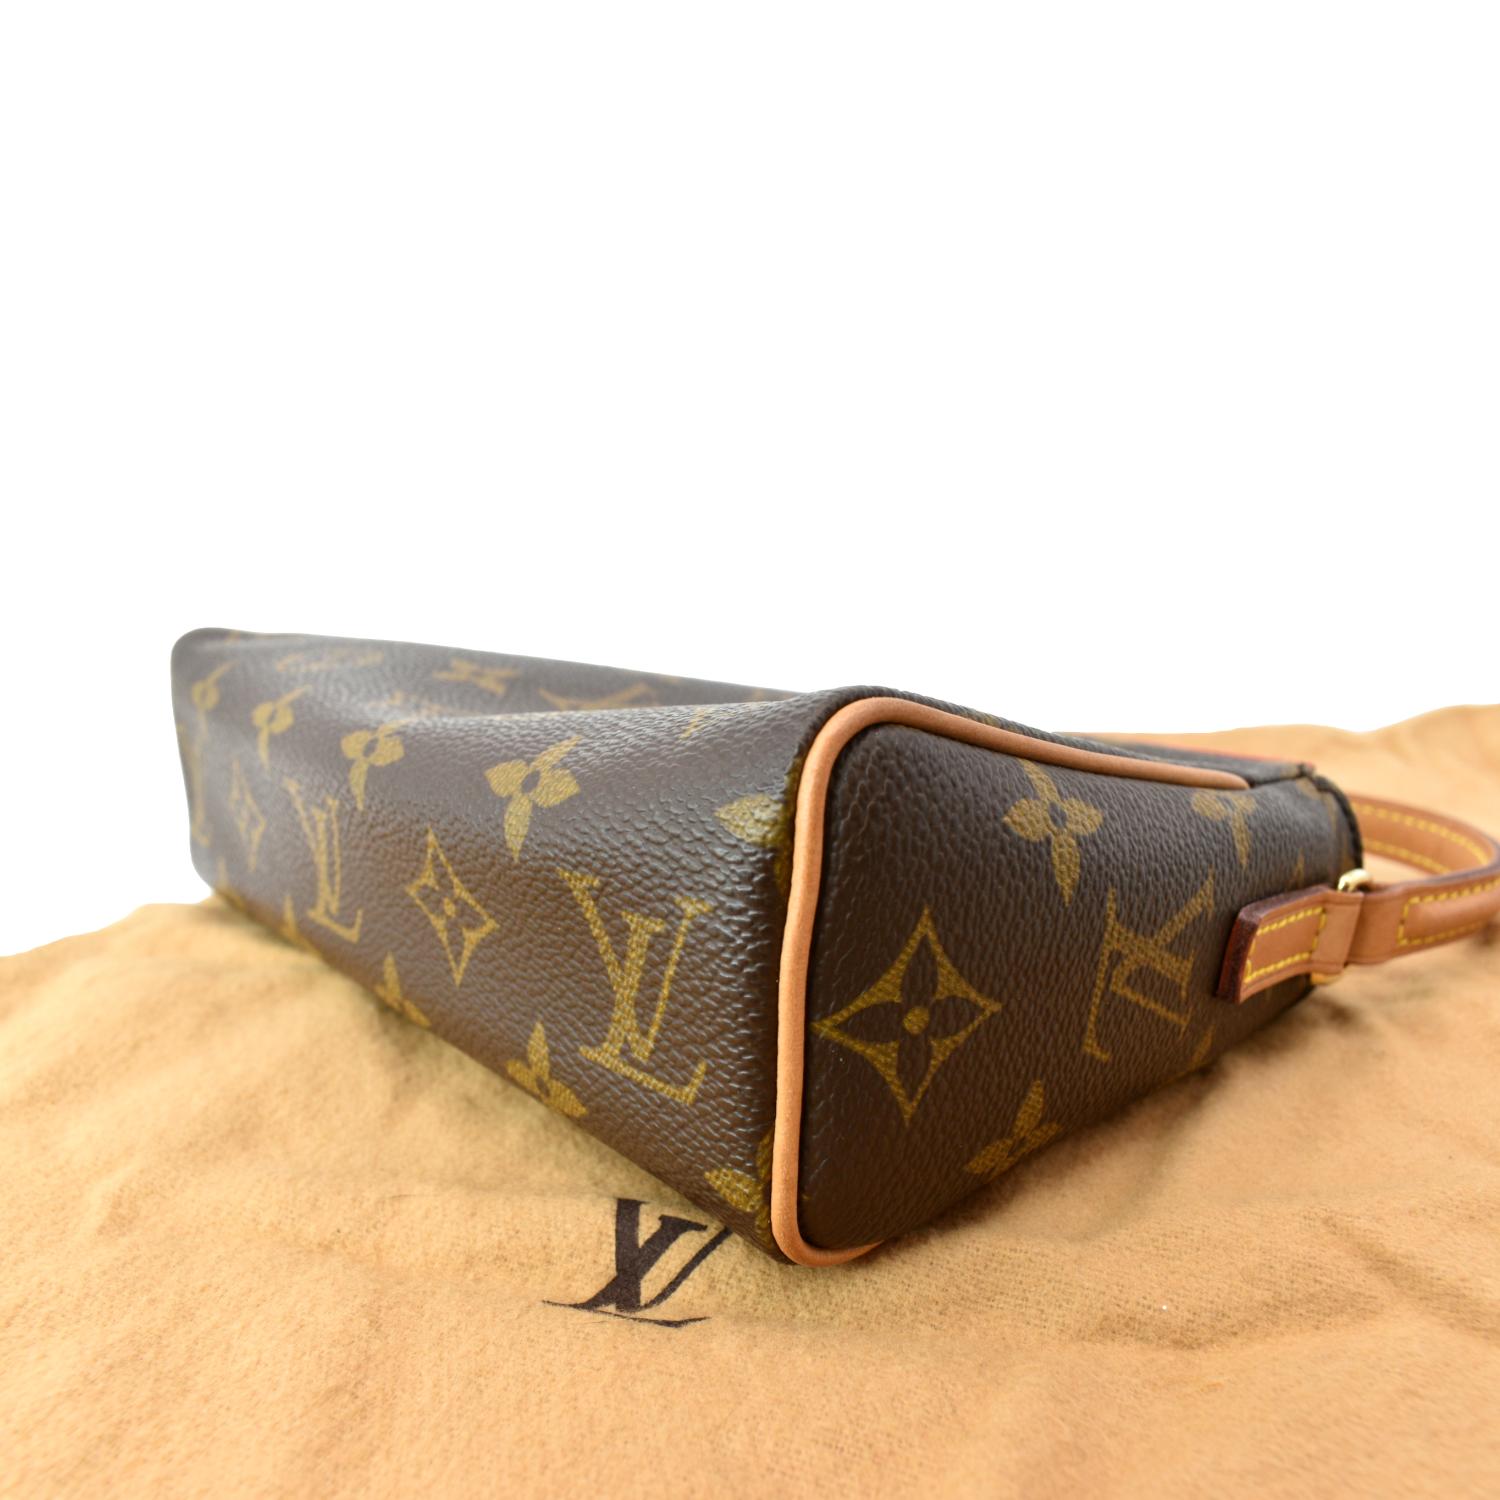 Louis Vuitton, Bags, Authentic Louis Vuitton Recital Shoulder Bag